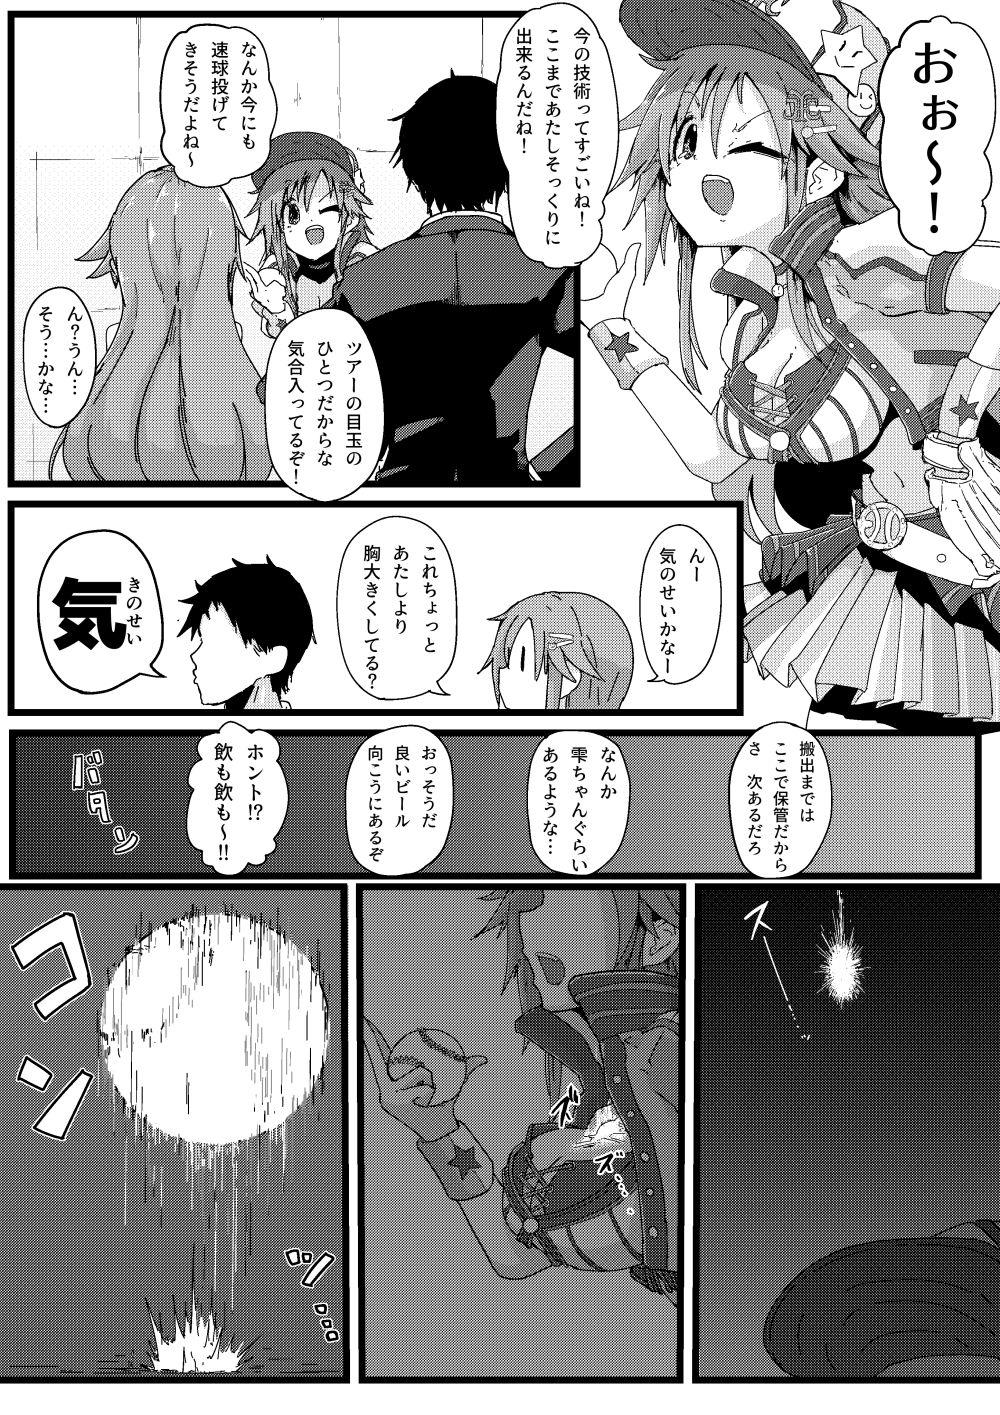 Toushindai Figure to Ecchi Manga 0